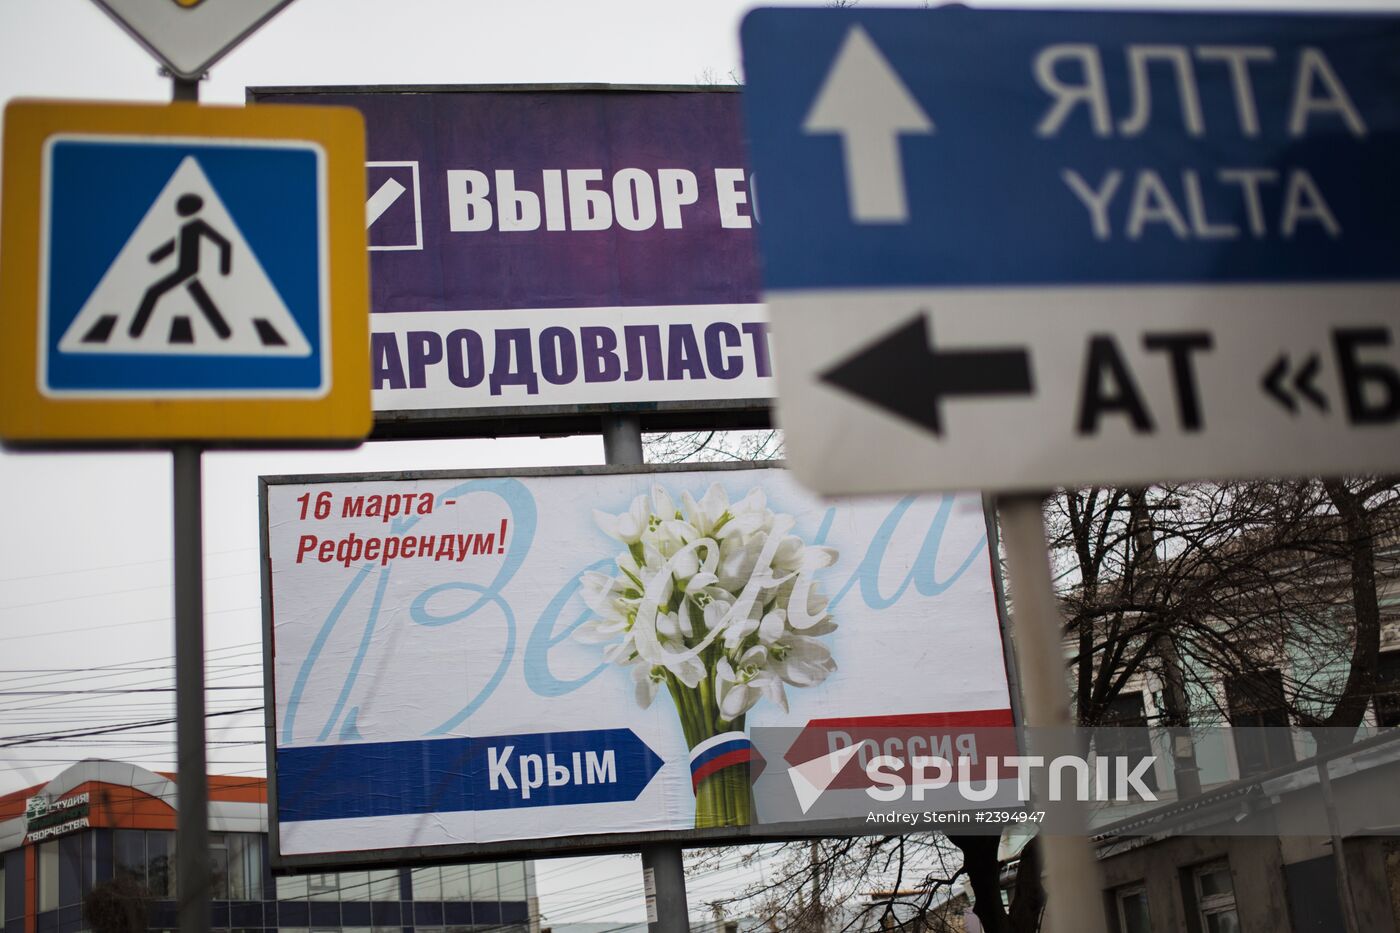 Campaign billboards in Simferopol